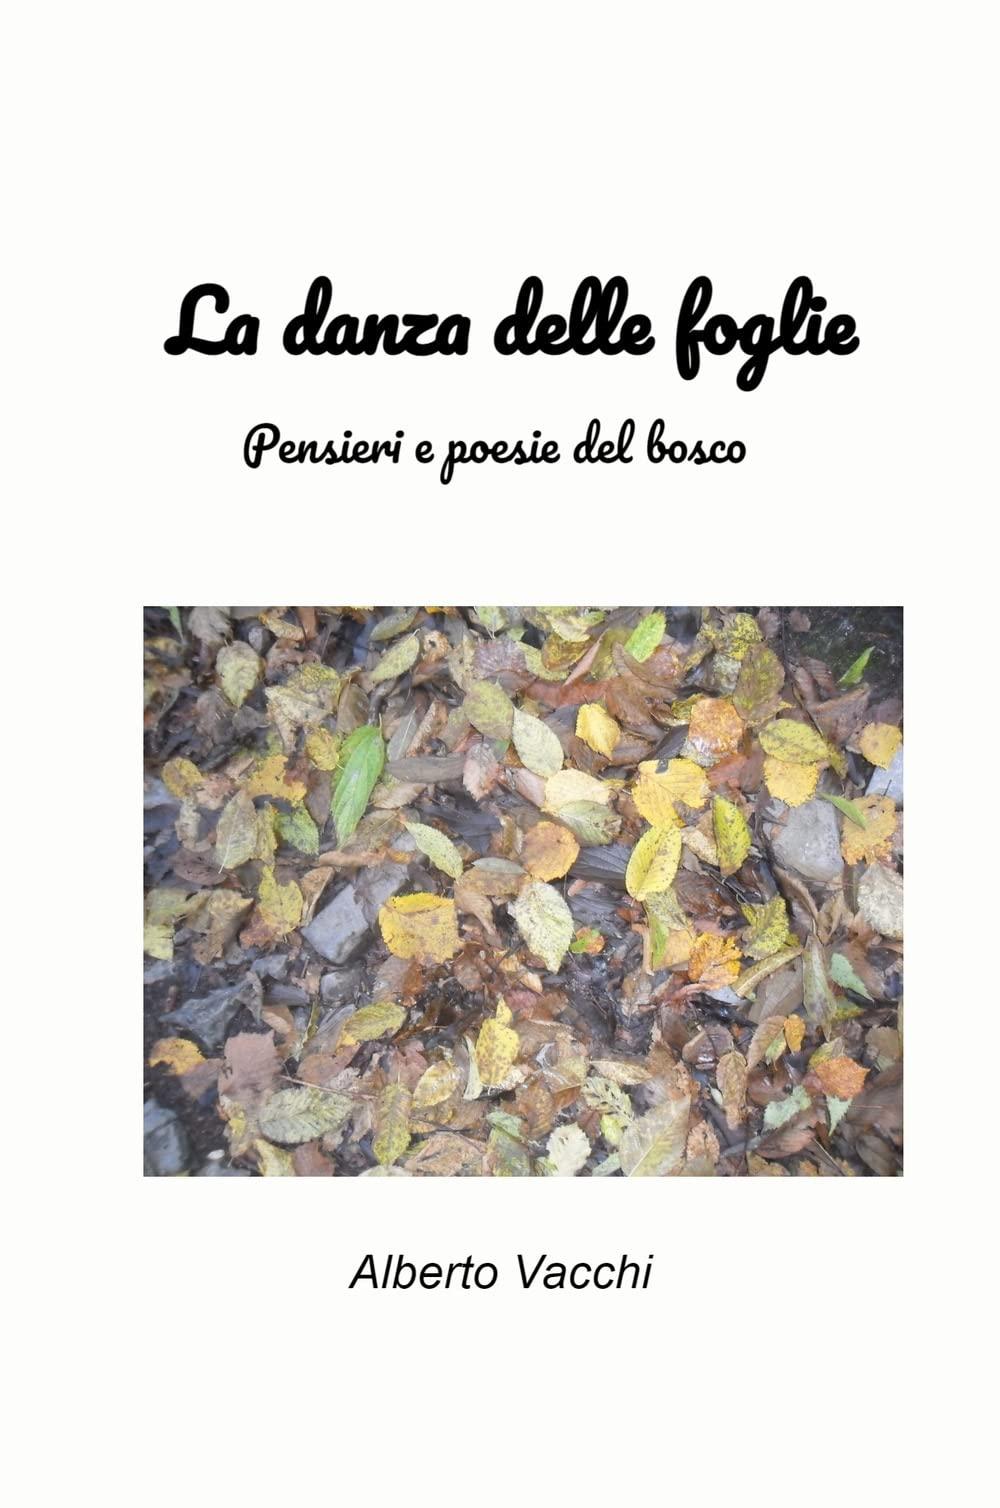 Libro "La danza delle foglie" di Alberto Vacchi